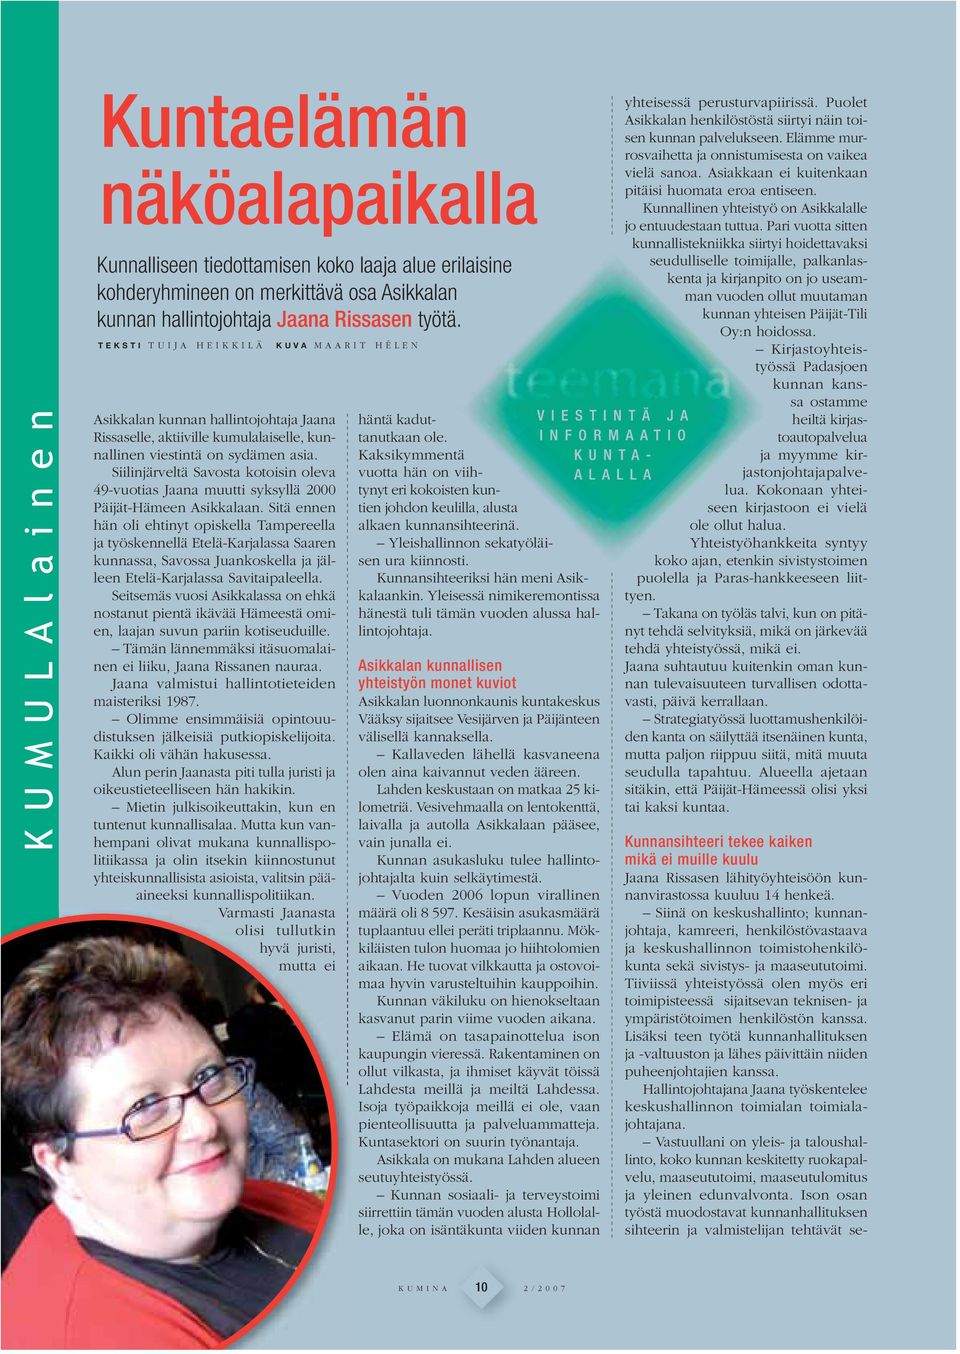 Siilinjärveltä Savosta kotoisin oleva 49-vuotias Jaana muutti syksyllä 2000 Päijät-Hämeen Asikkalaan.